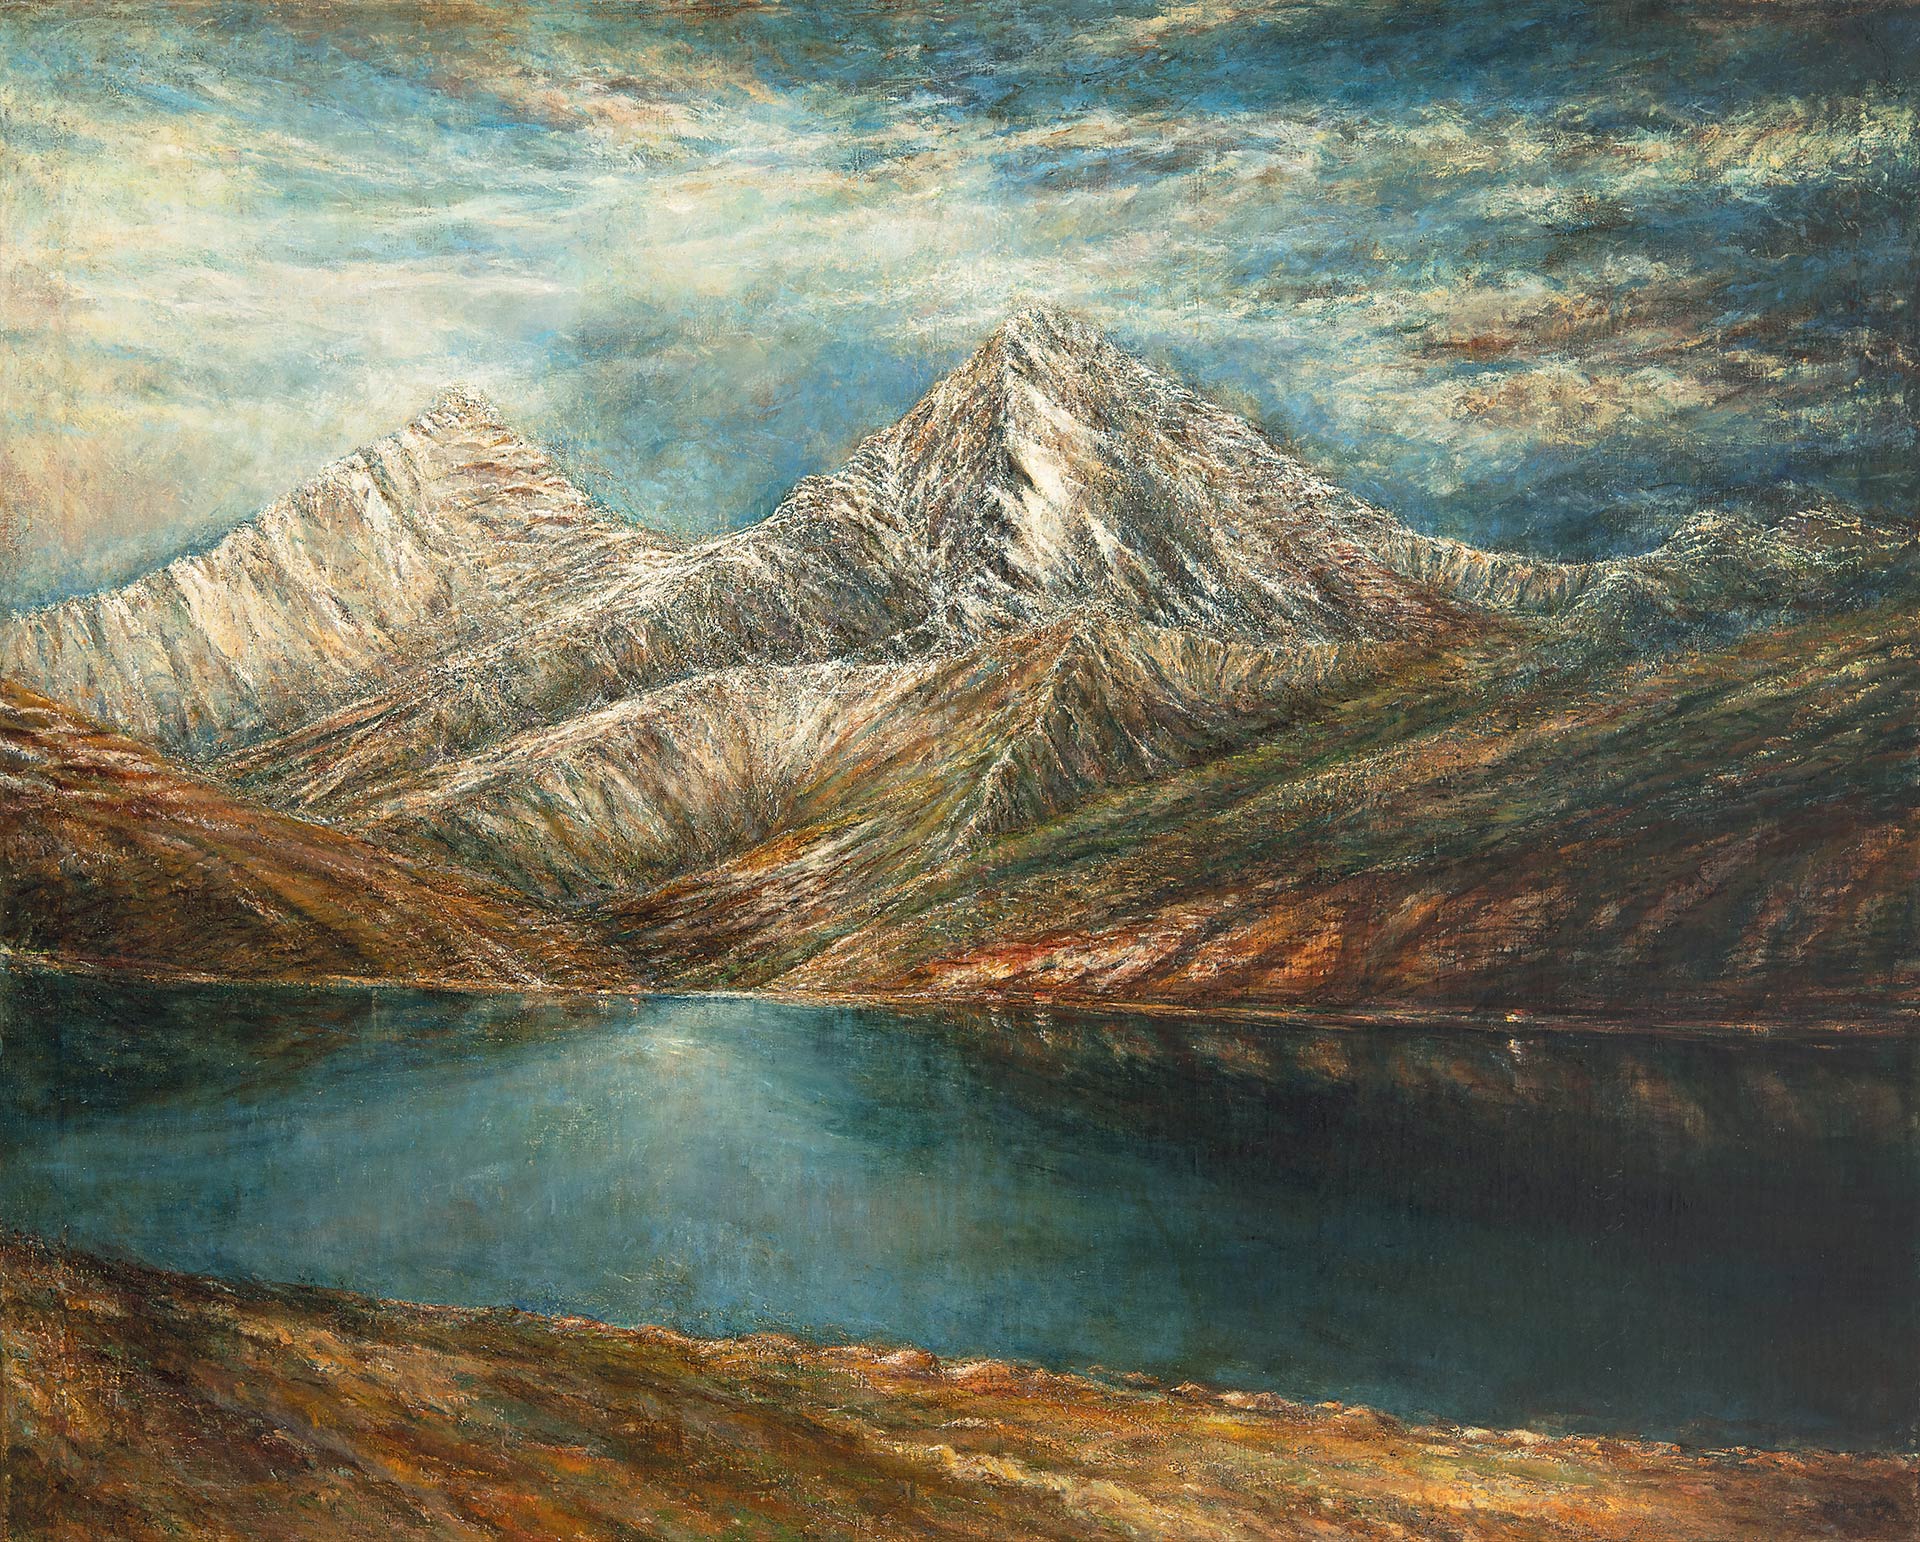 Mednyánszky László (1852-1919) Csorba glacier lake in the Tatra Mountains